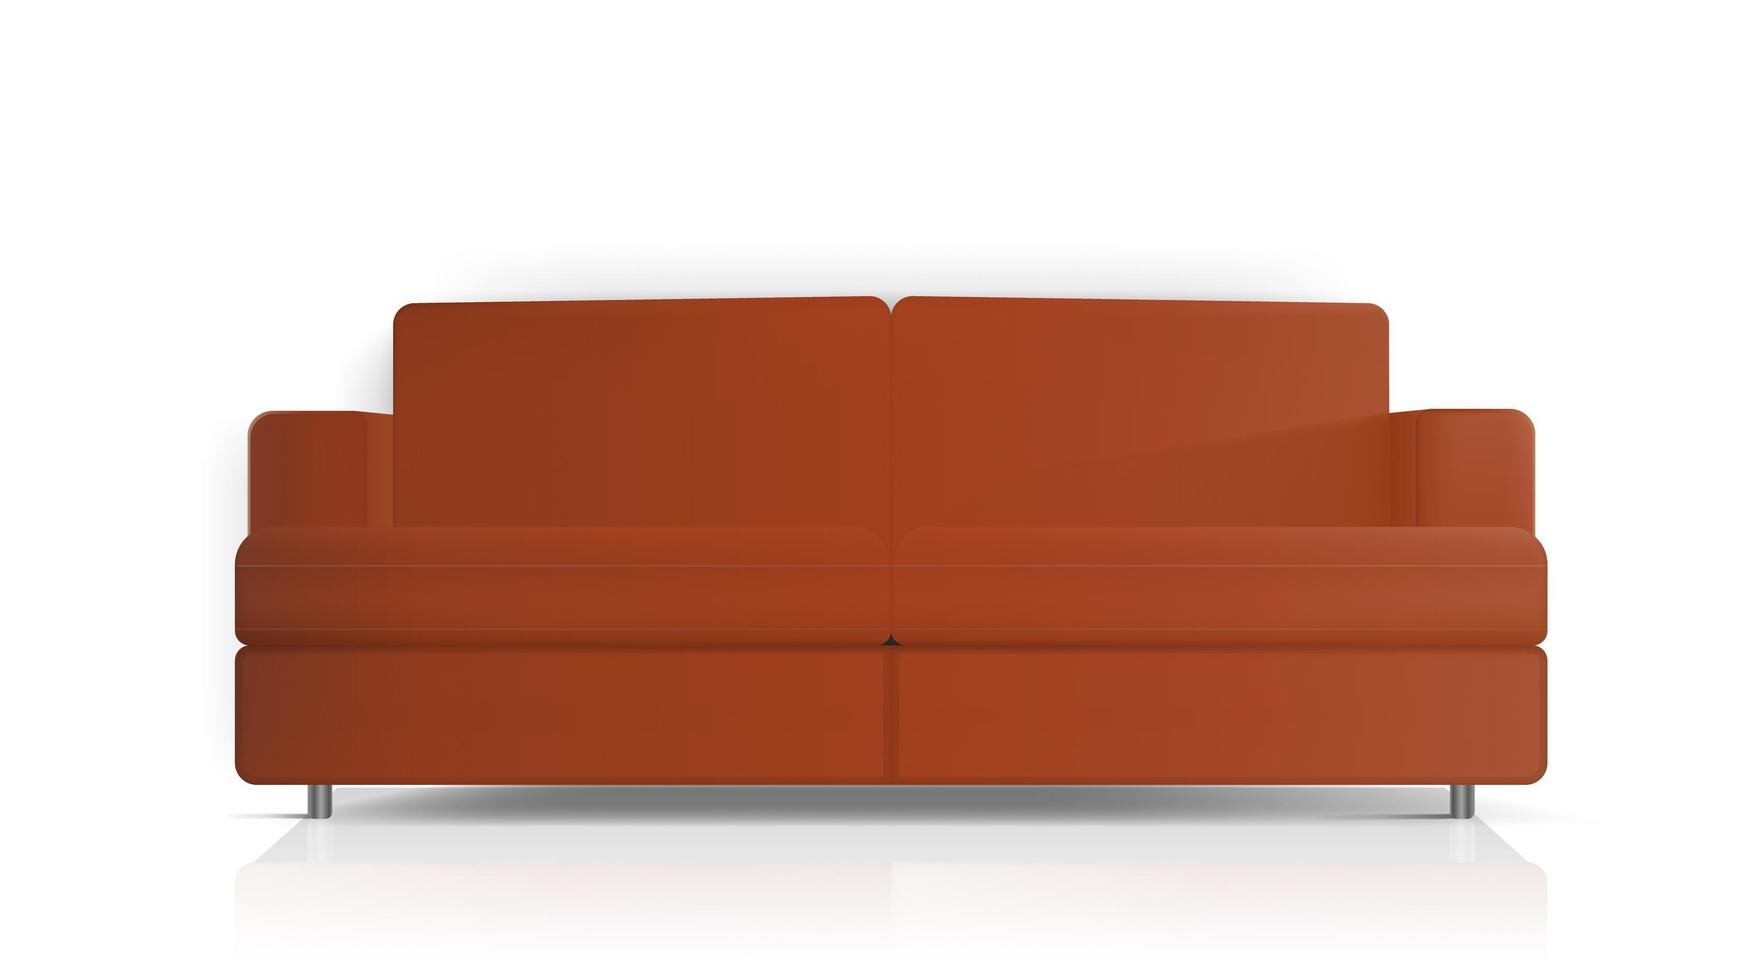 sofá vermelho vetor realista. sofá vermelho isolado em um fundo branco. elemento de design de interiores.